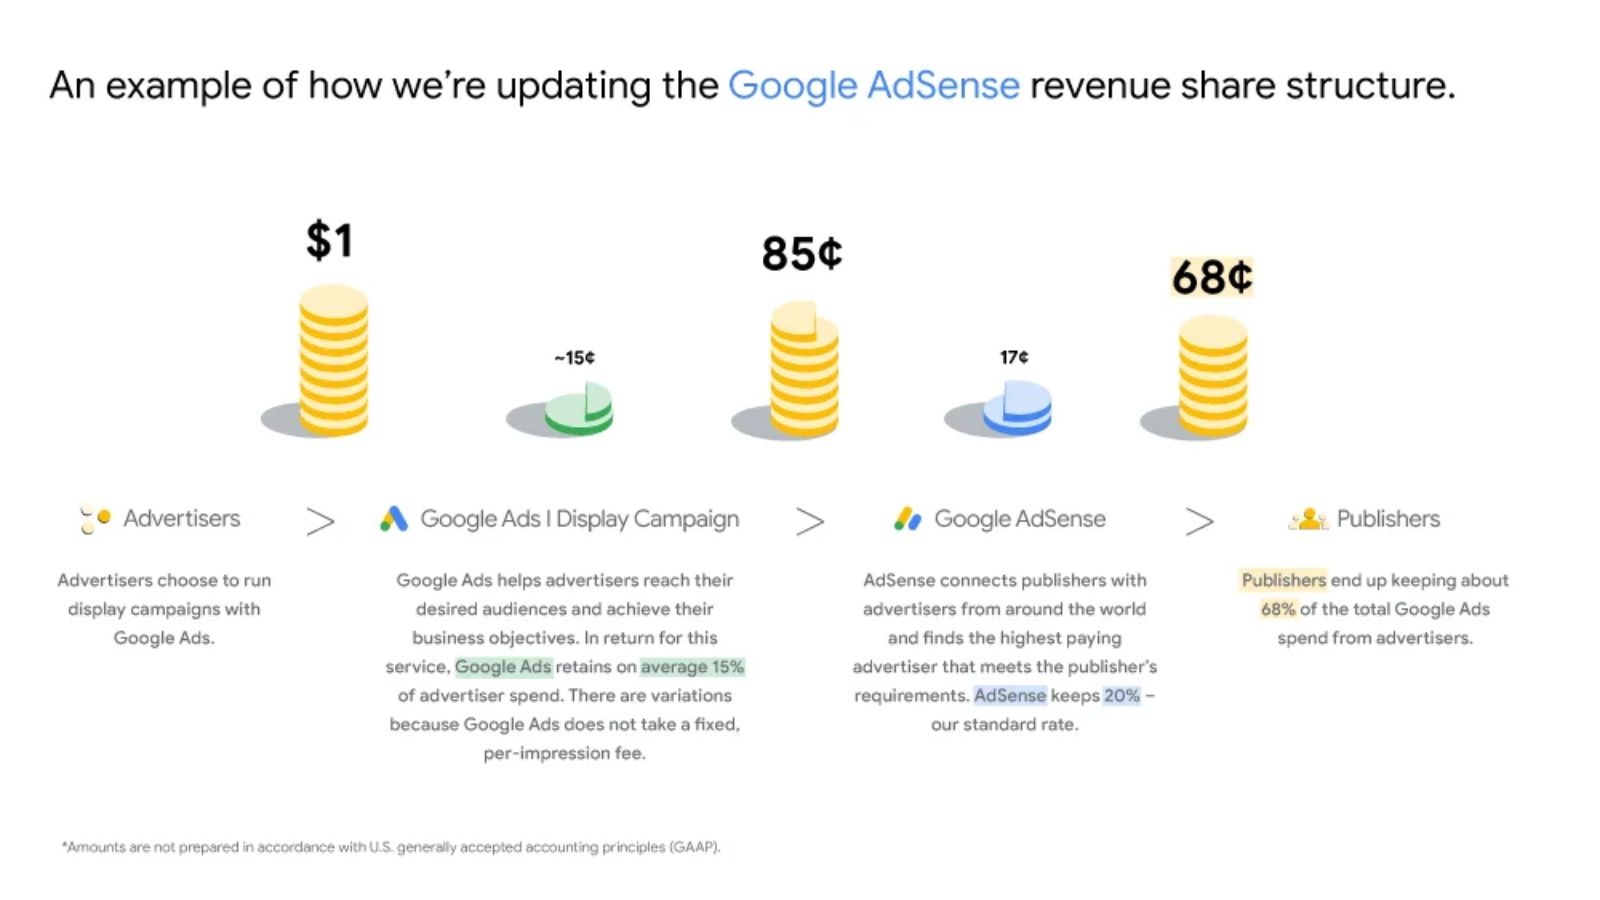 AdSense revenue share